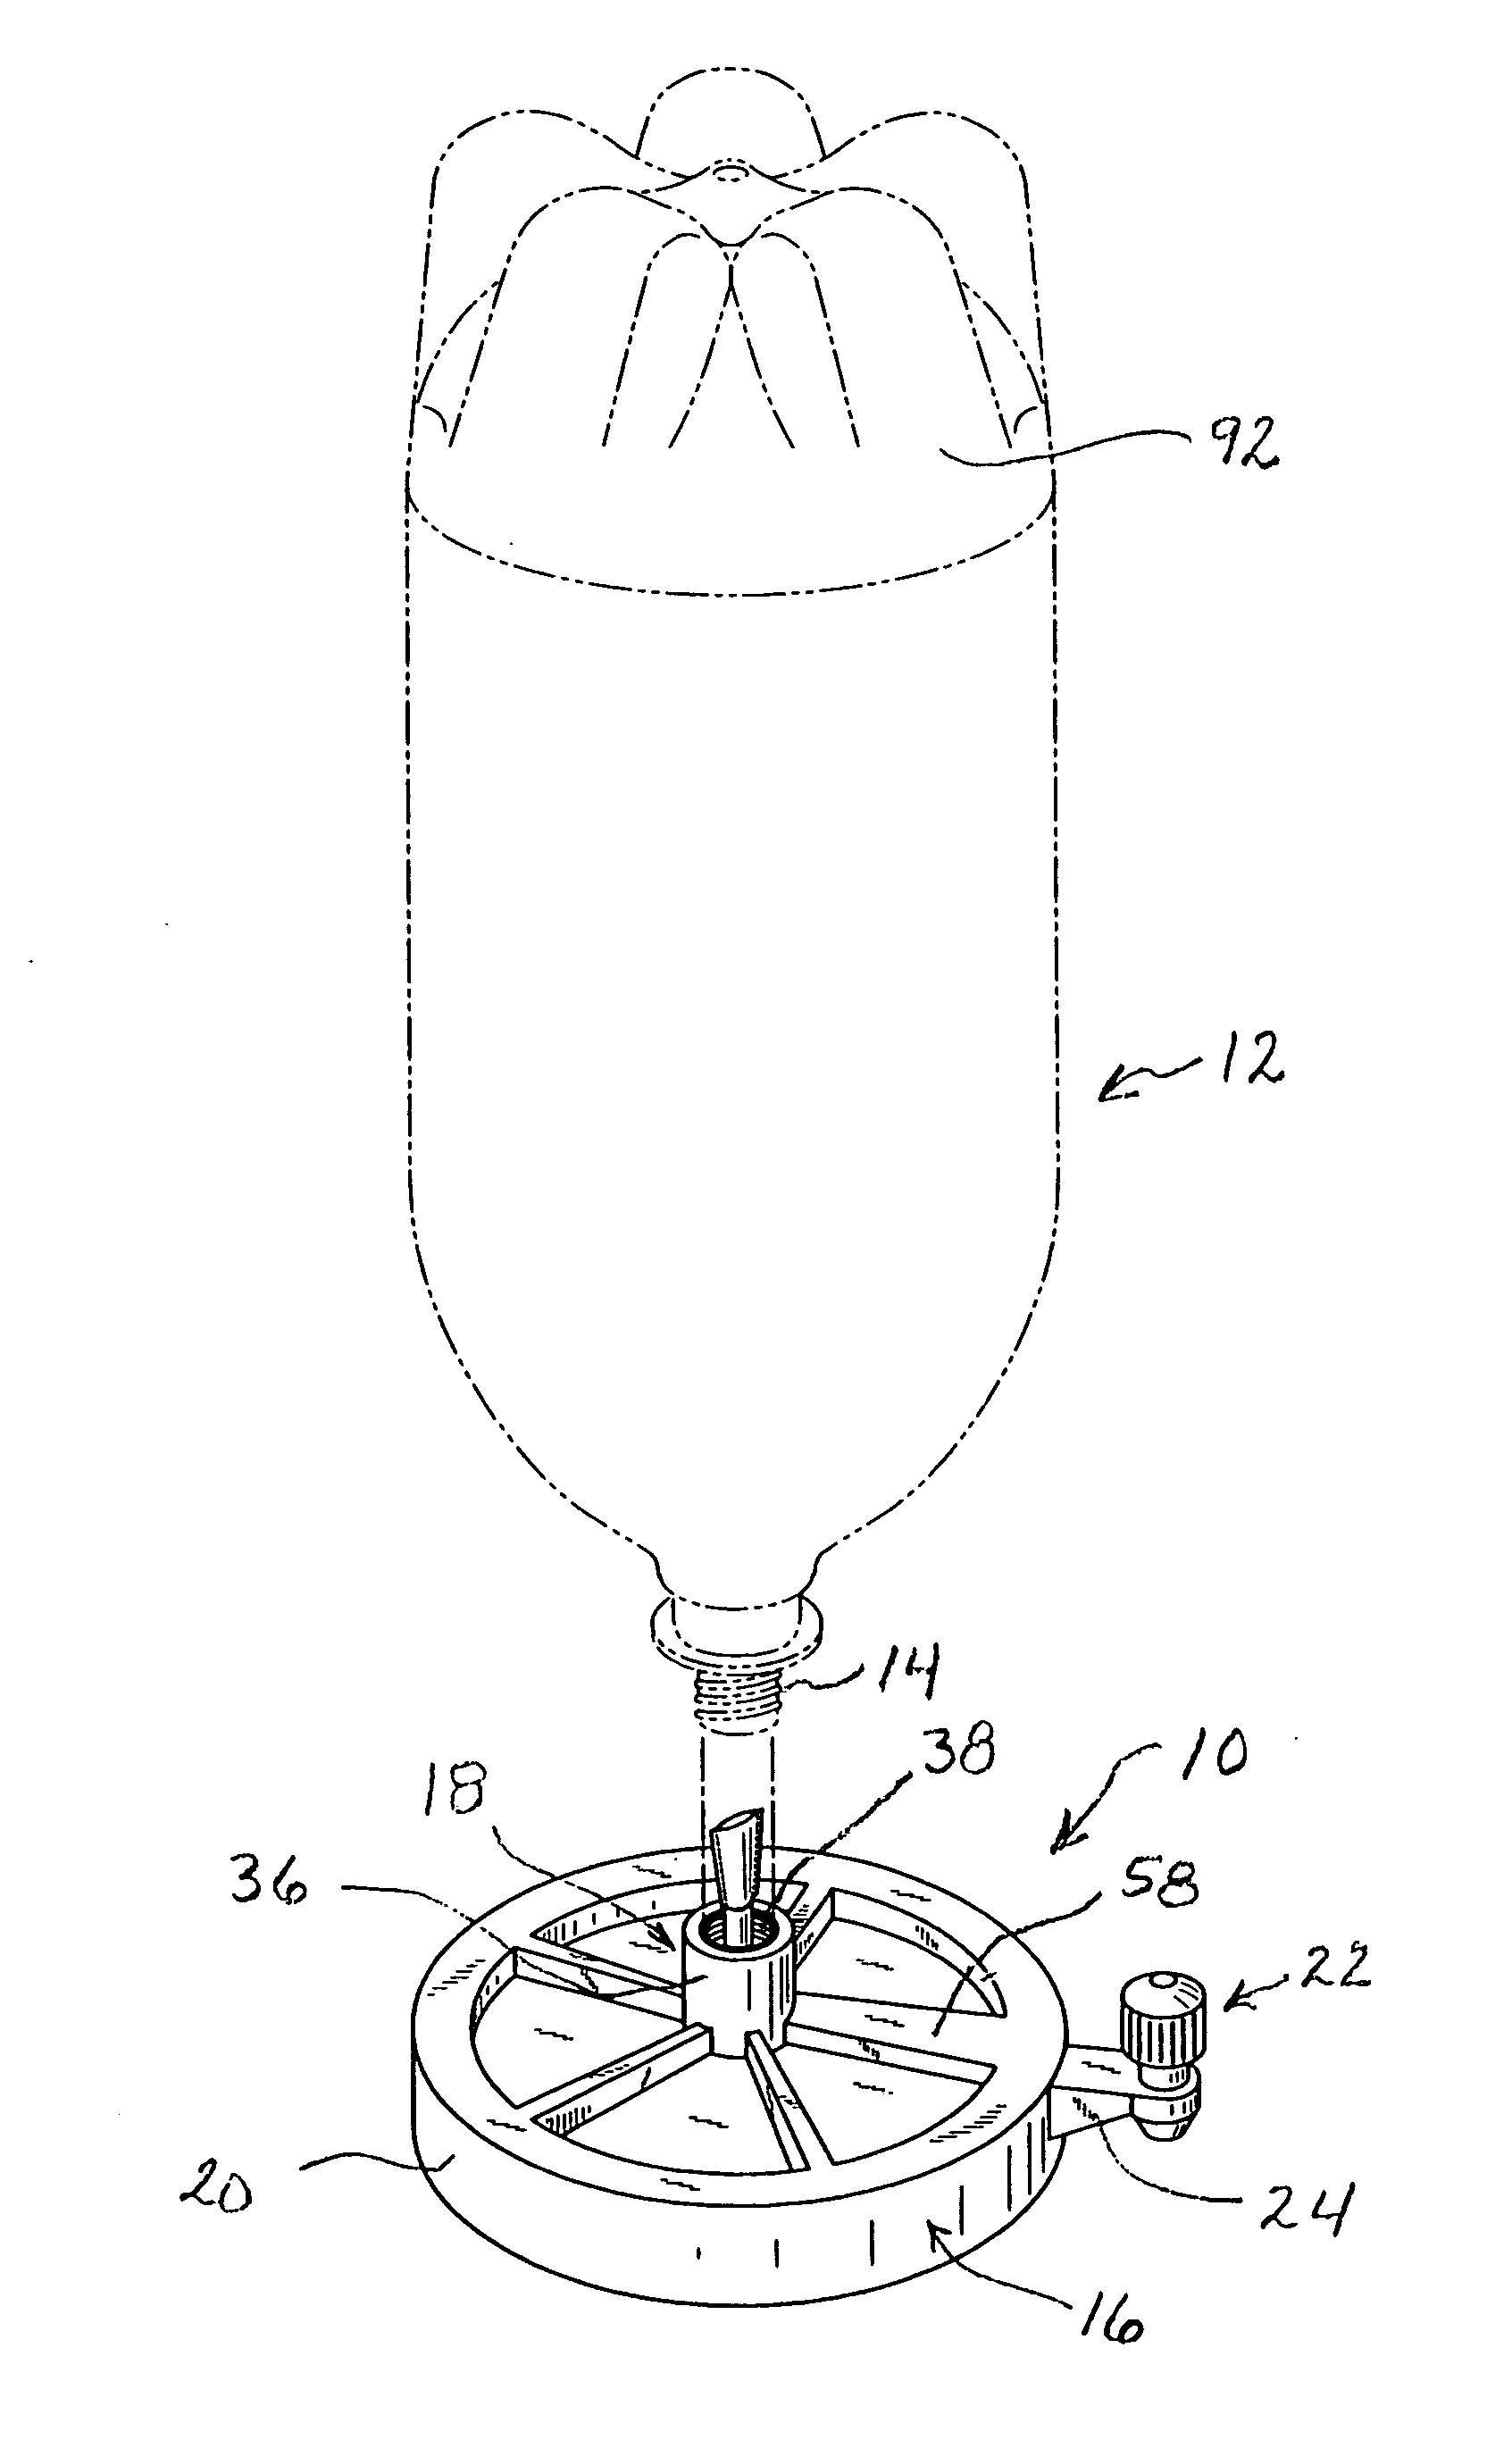 Liquid container valve system